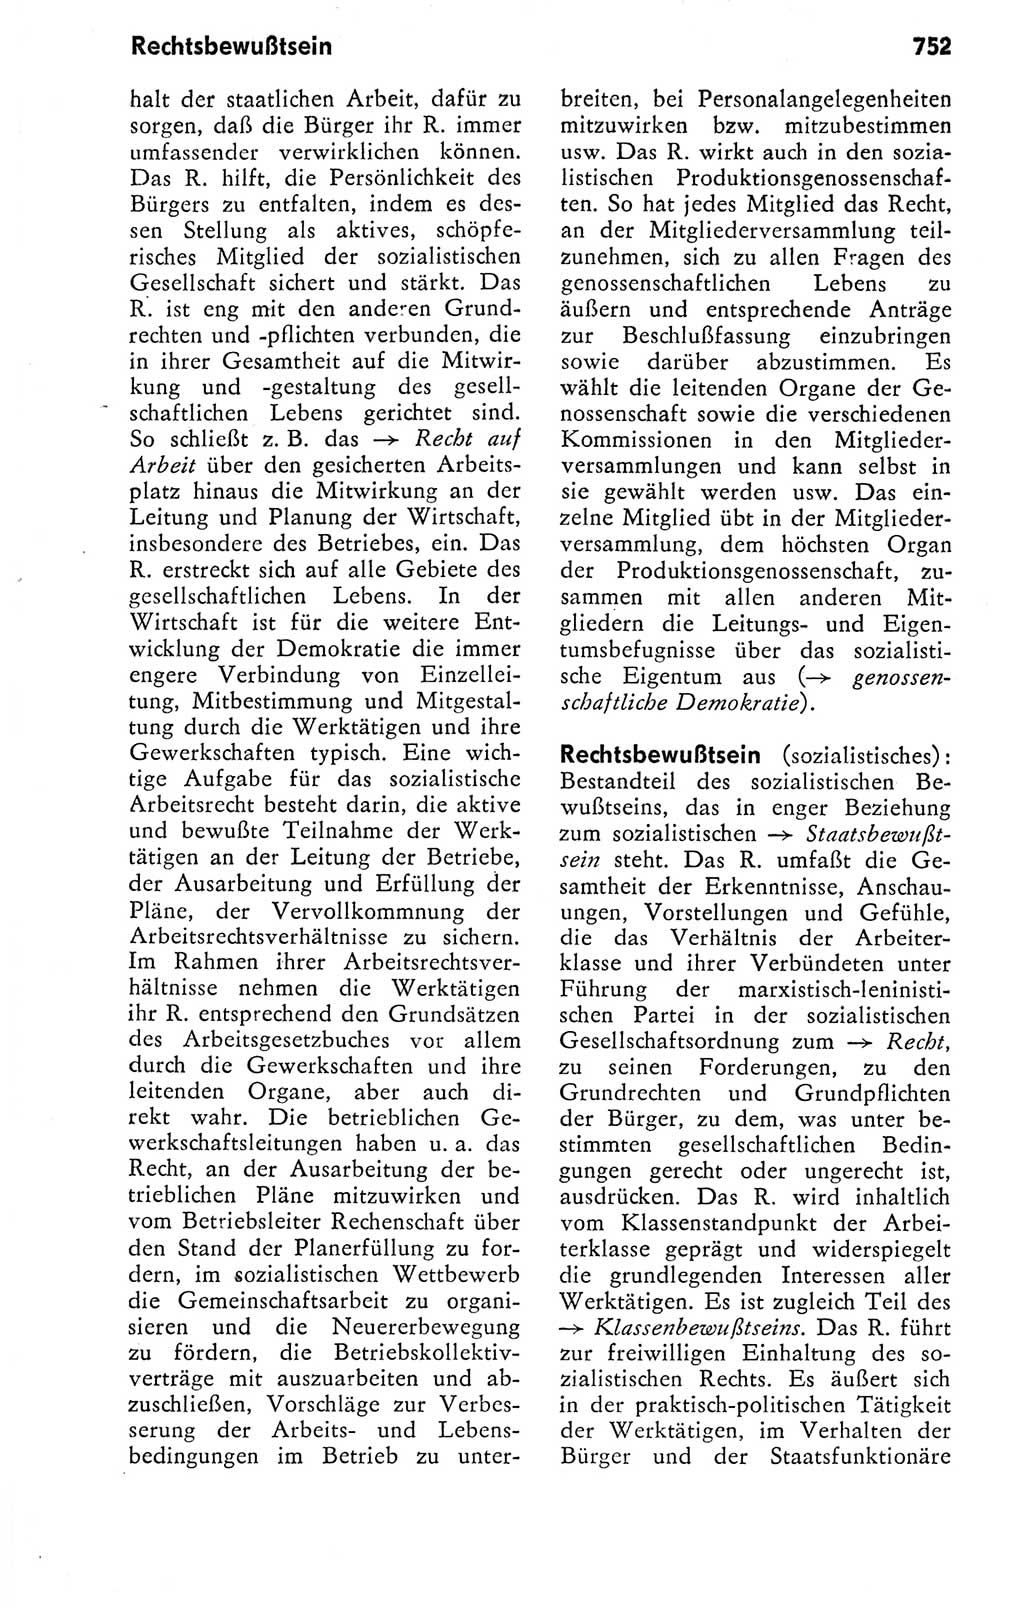 Kleines politisches Wörterbuch [Deutsche Demokratische Republik (DDR)] 1978, Seite 752 (Kl. pol. Wb. DDR 1978, S. 752)